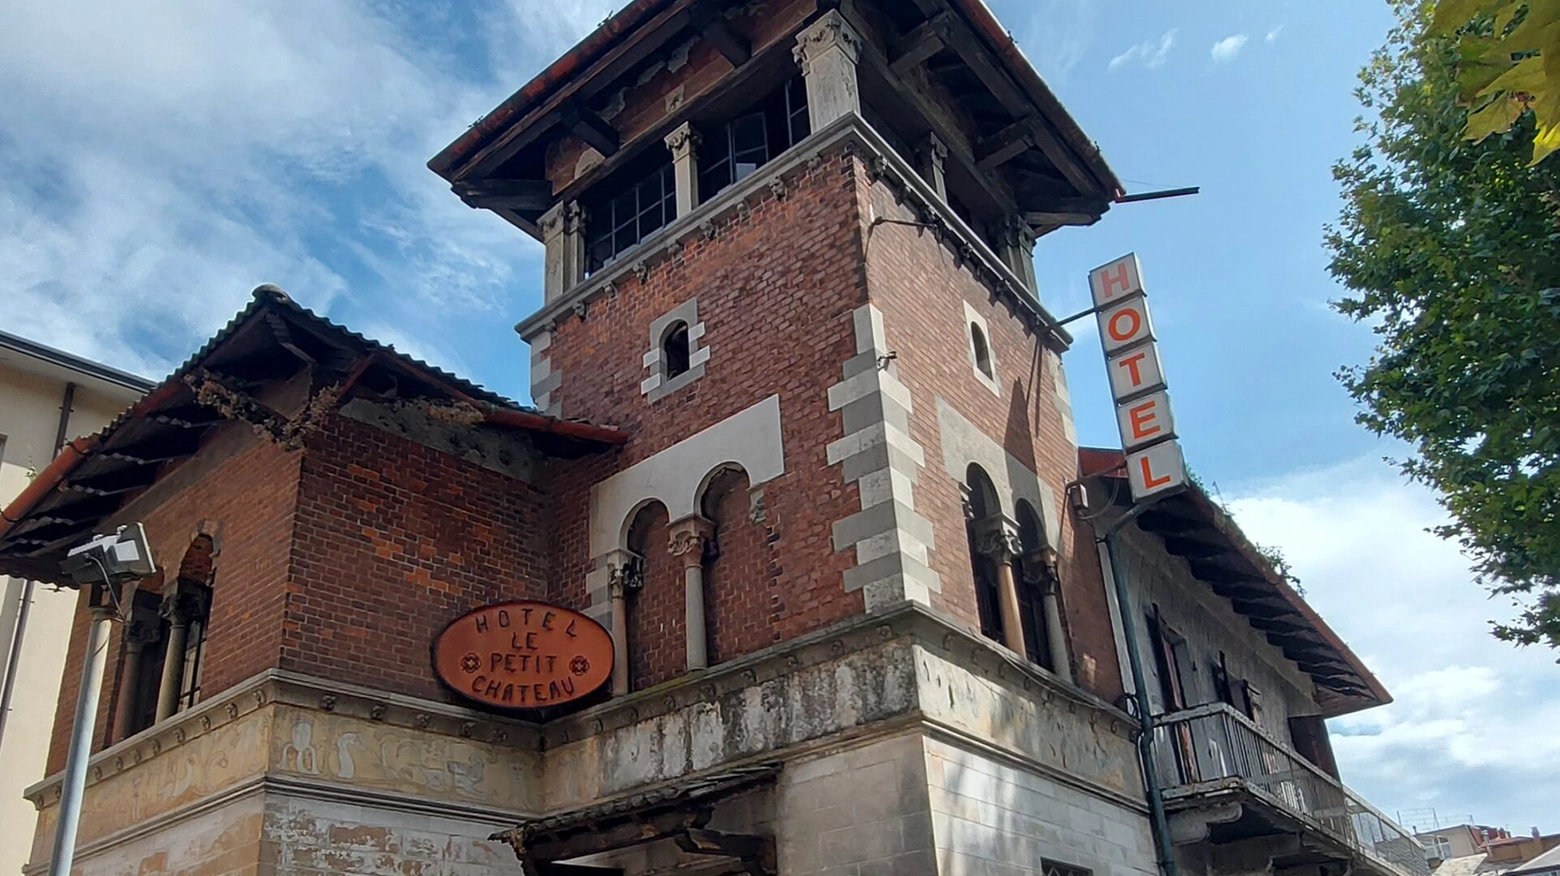 La facciata dell'ex hotel "Le petit chateau"